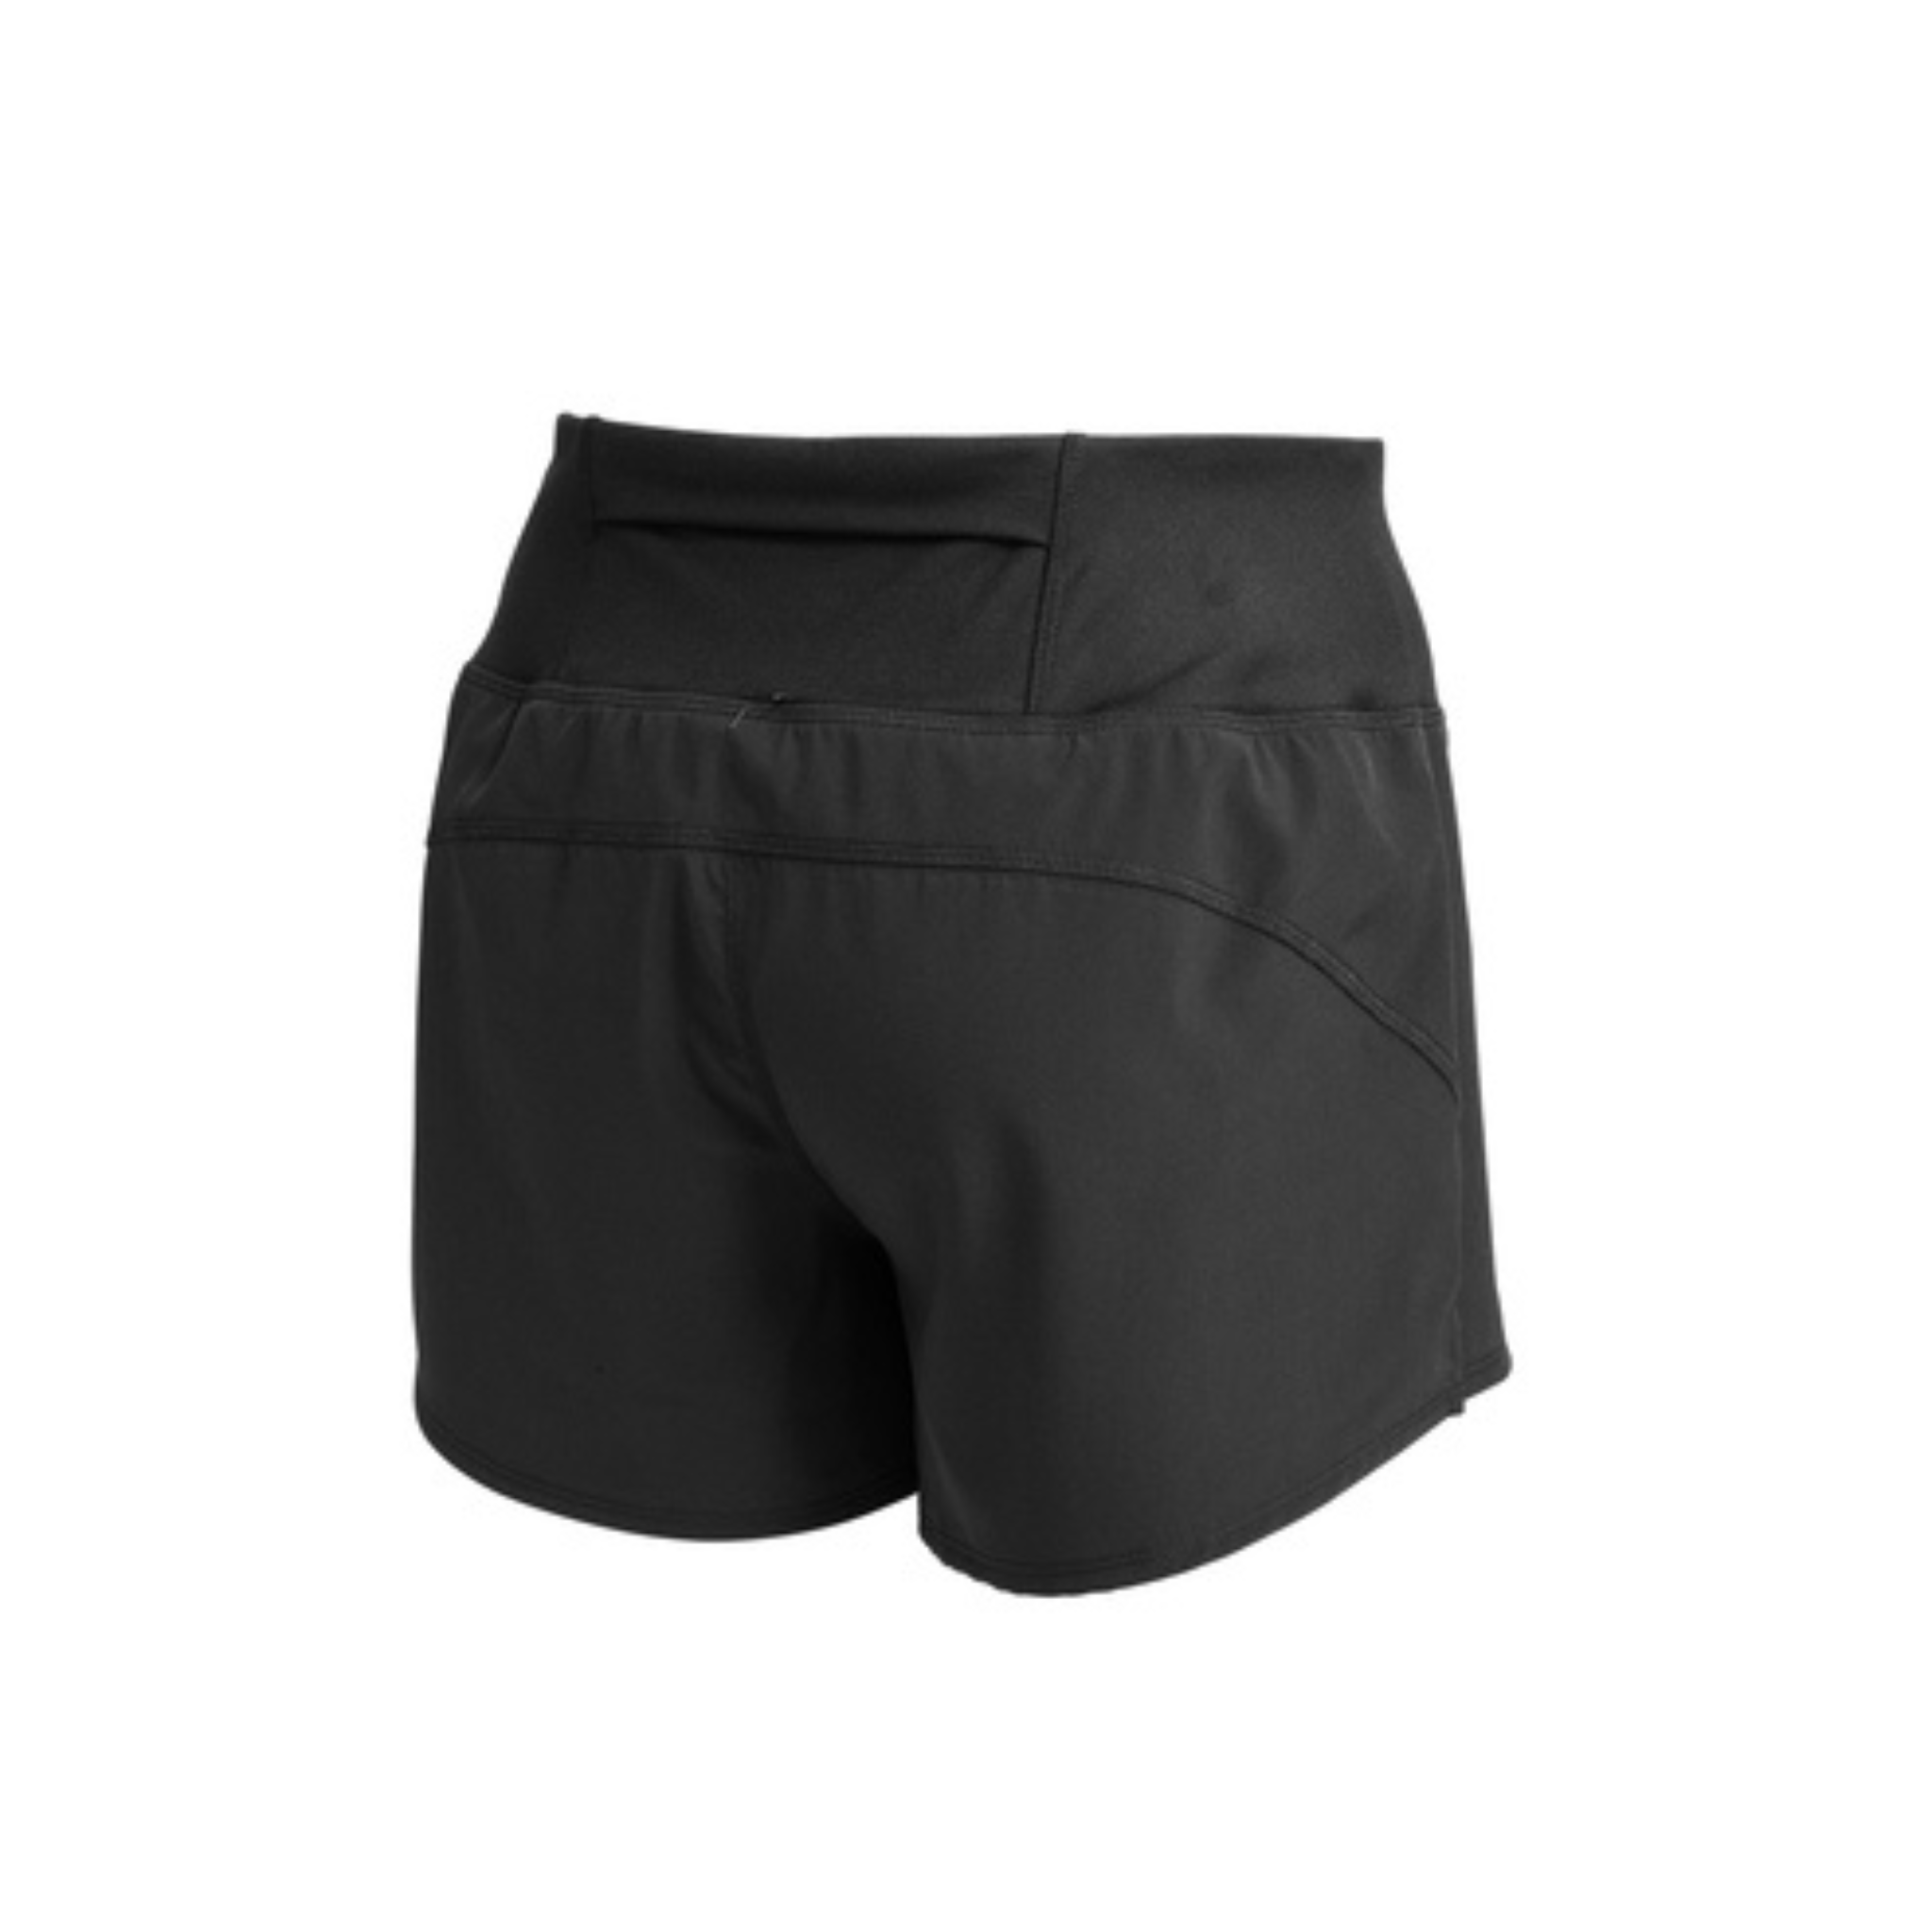 NB Women's Shorts